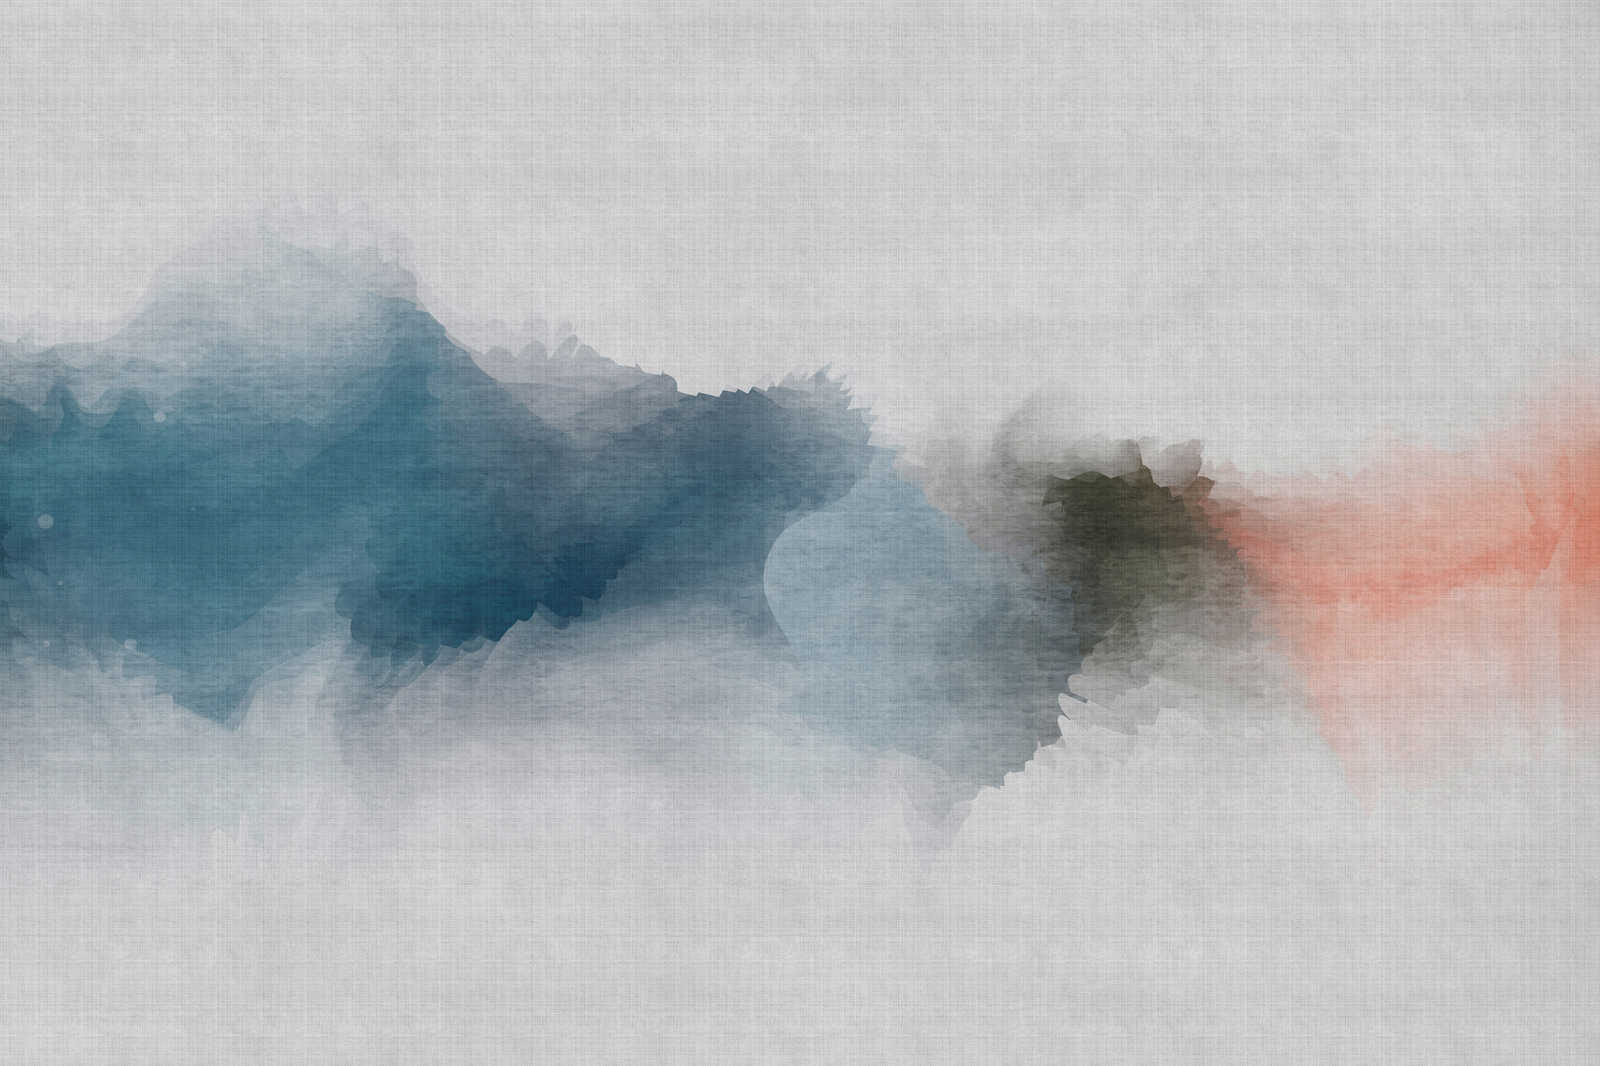             Sogno ad occhi aperti 1 - Quadro su tela in stile acquerello minimalista - Natura qualita consistenza in lino naturale - 0,90 m x 0,60 m
        